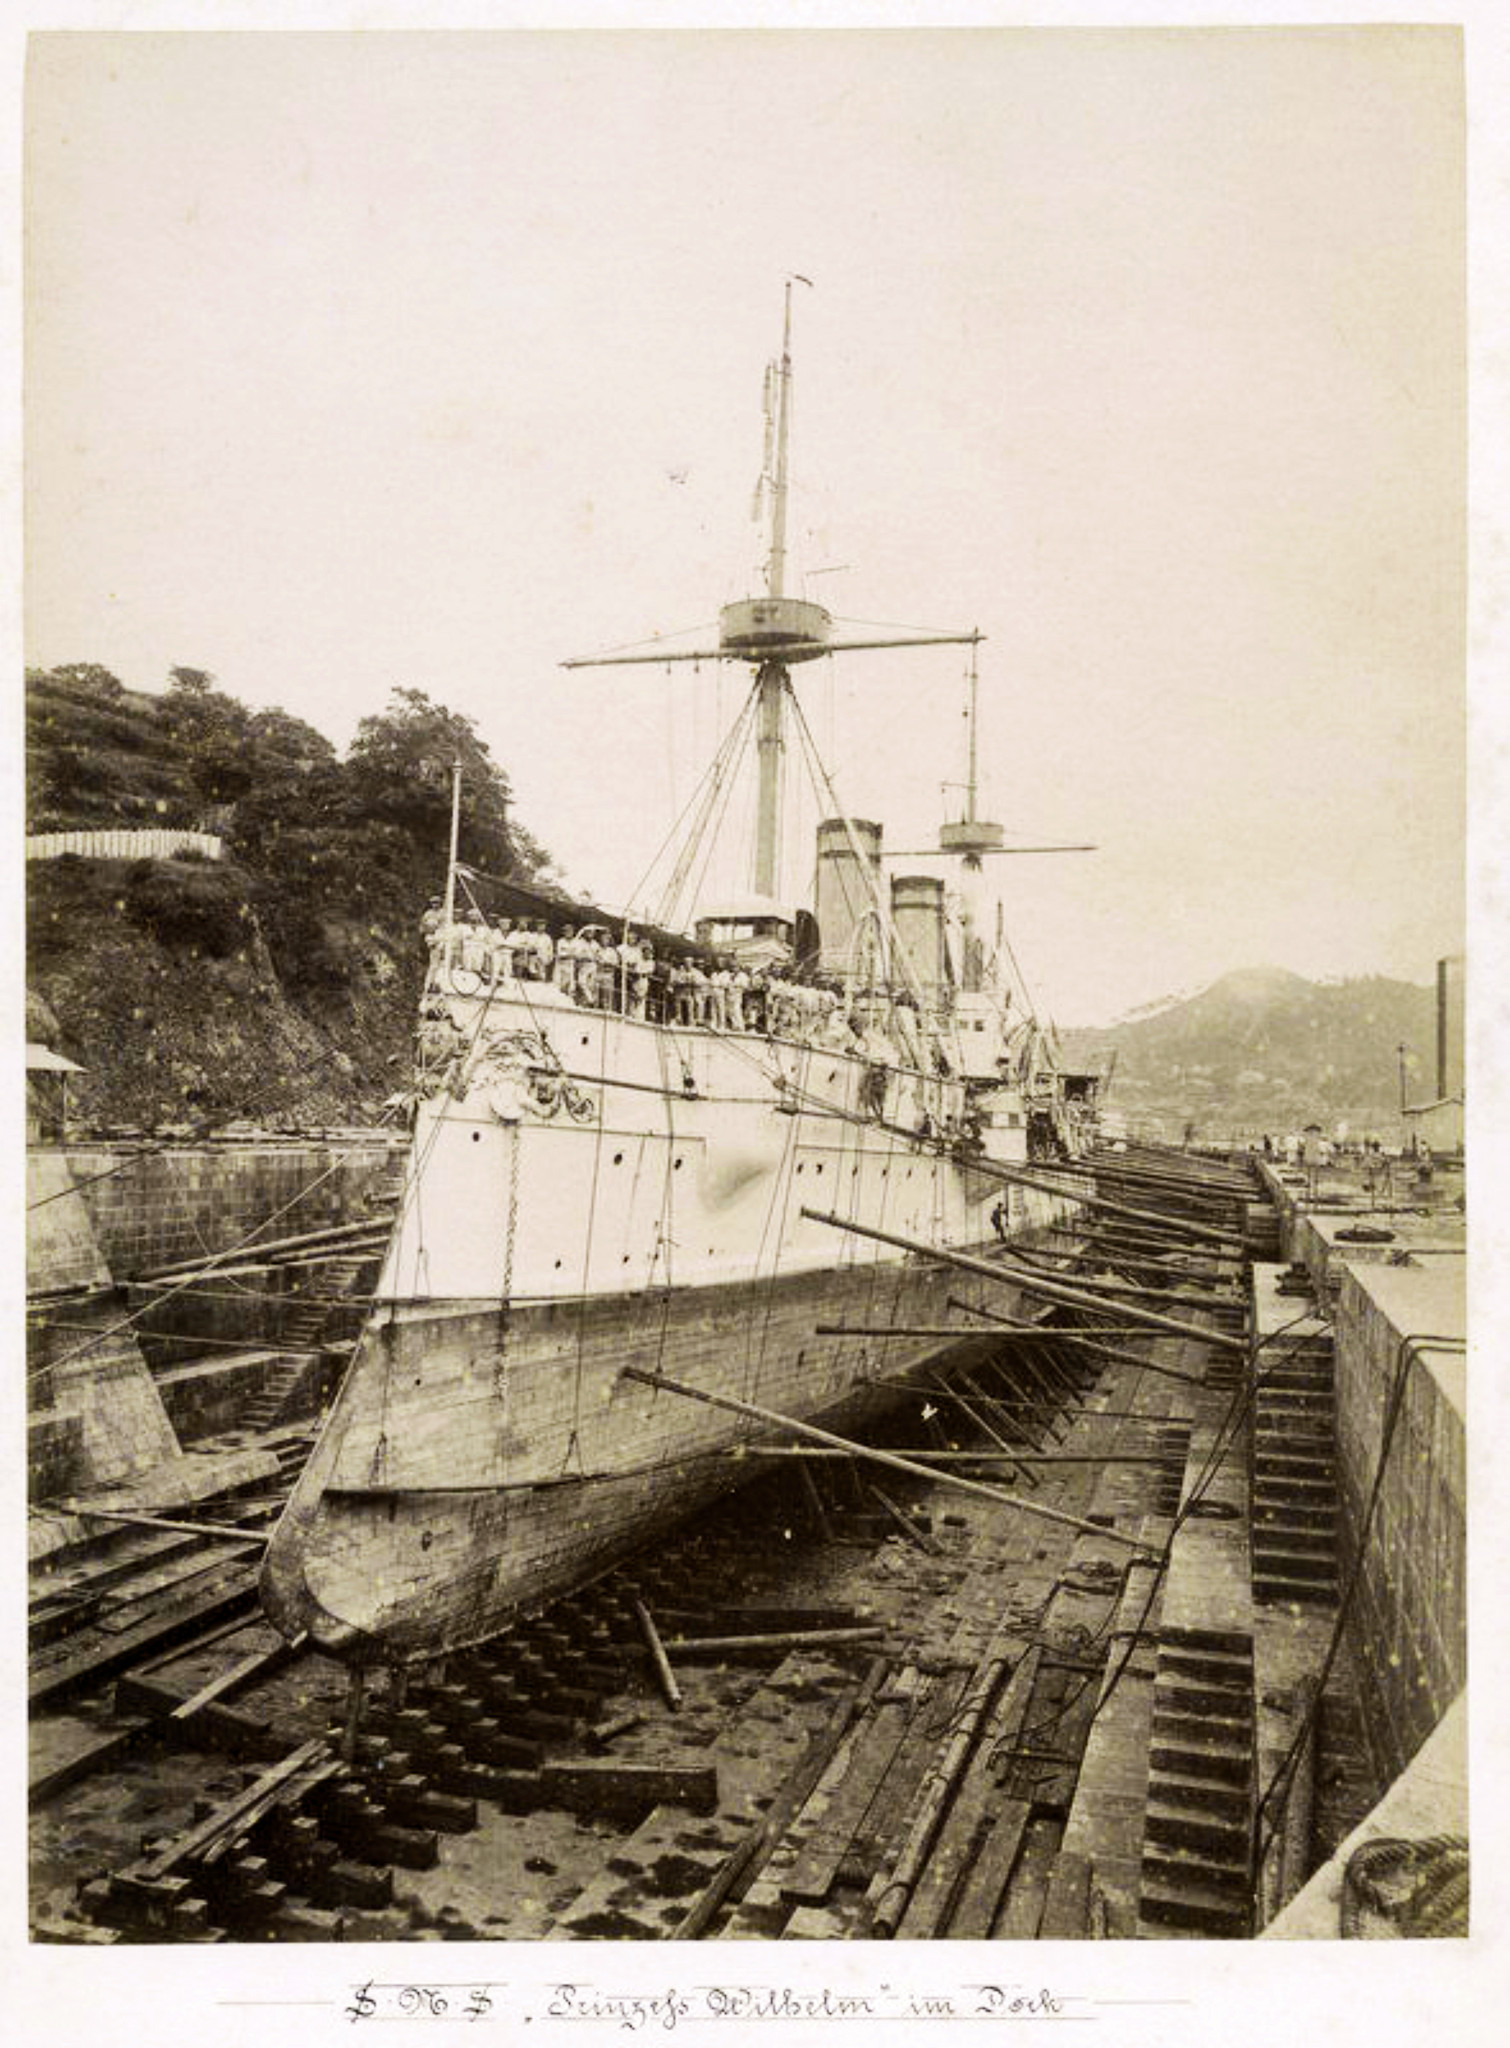 Prinzess Wilhem w doku (Nagasaki).jpg